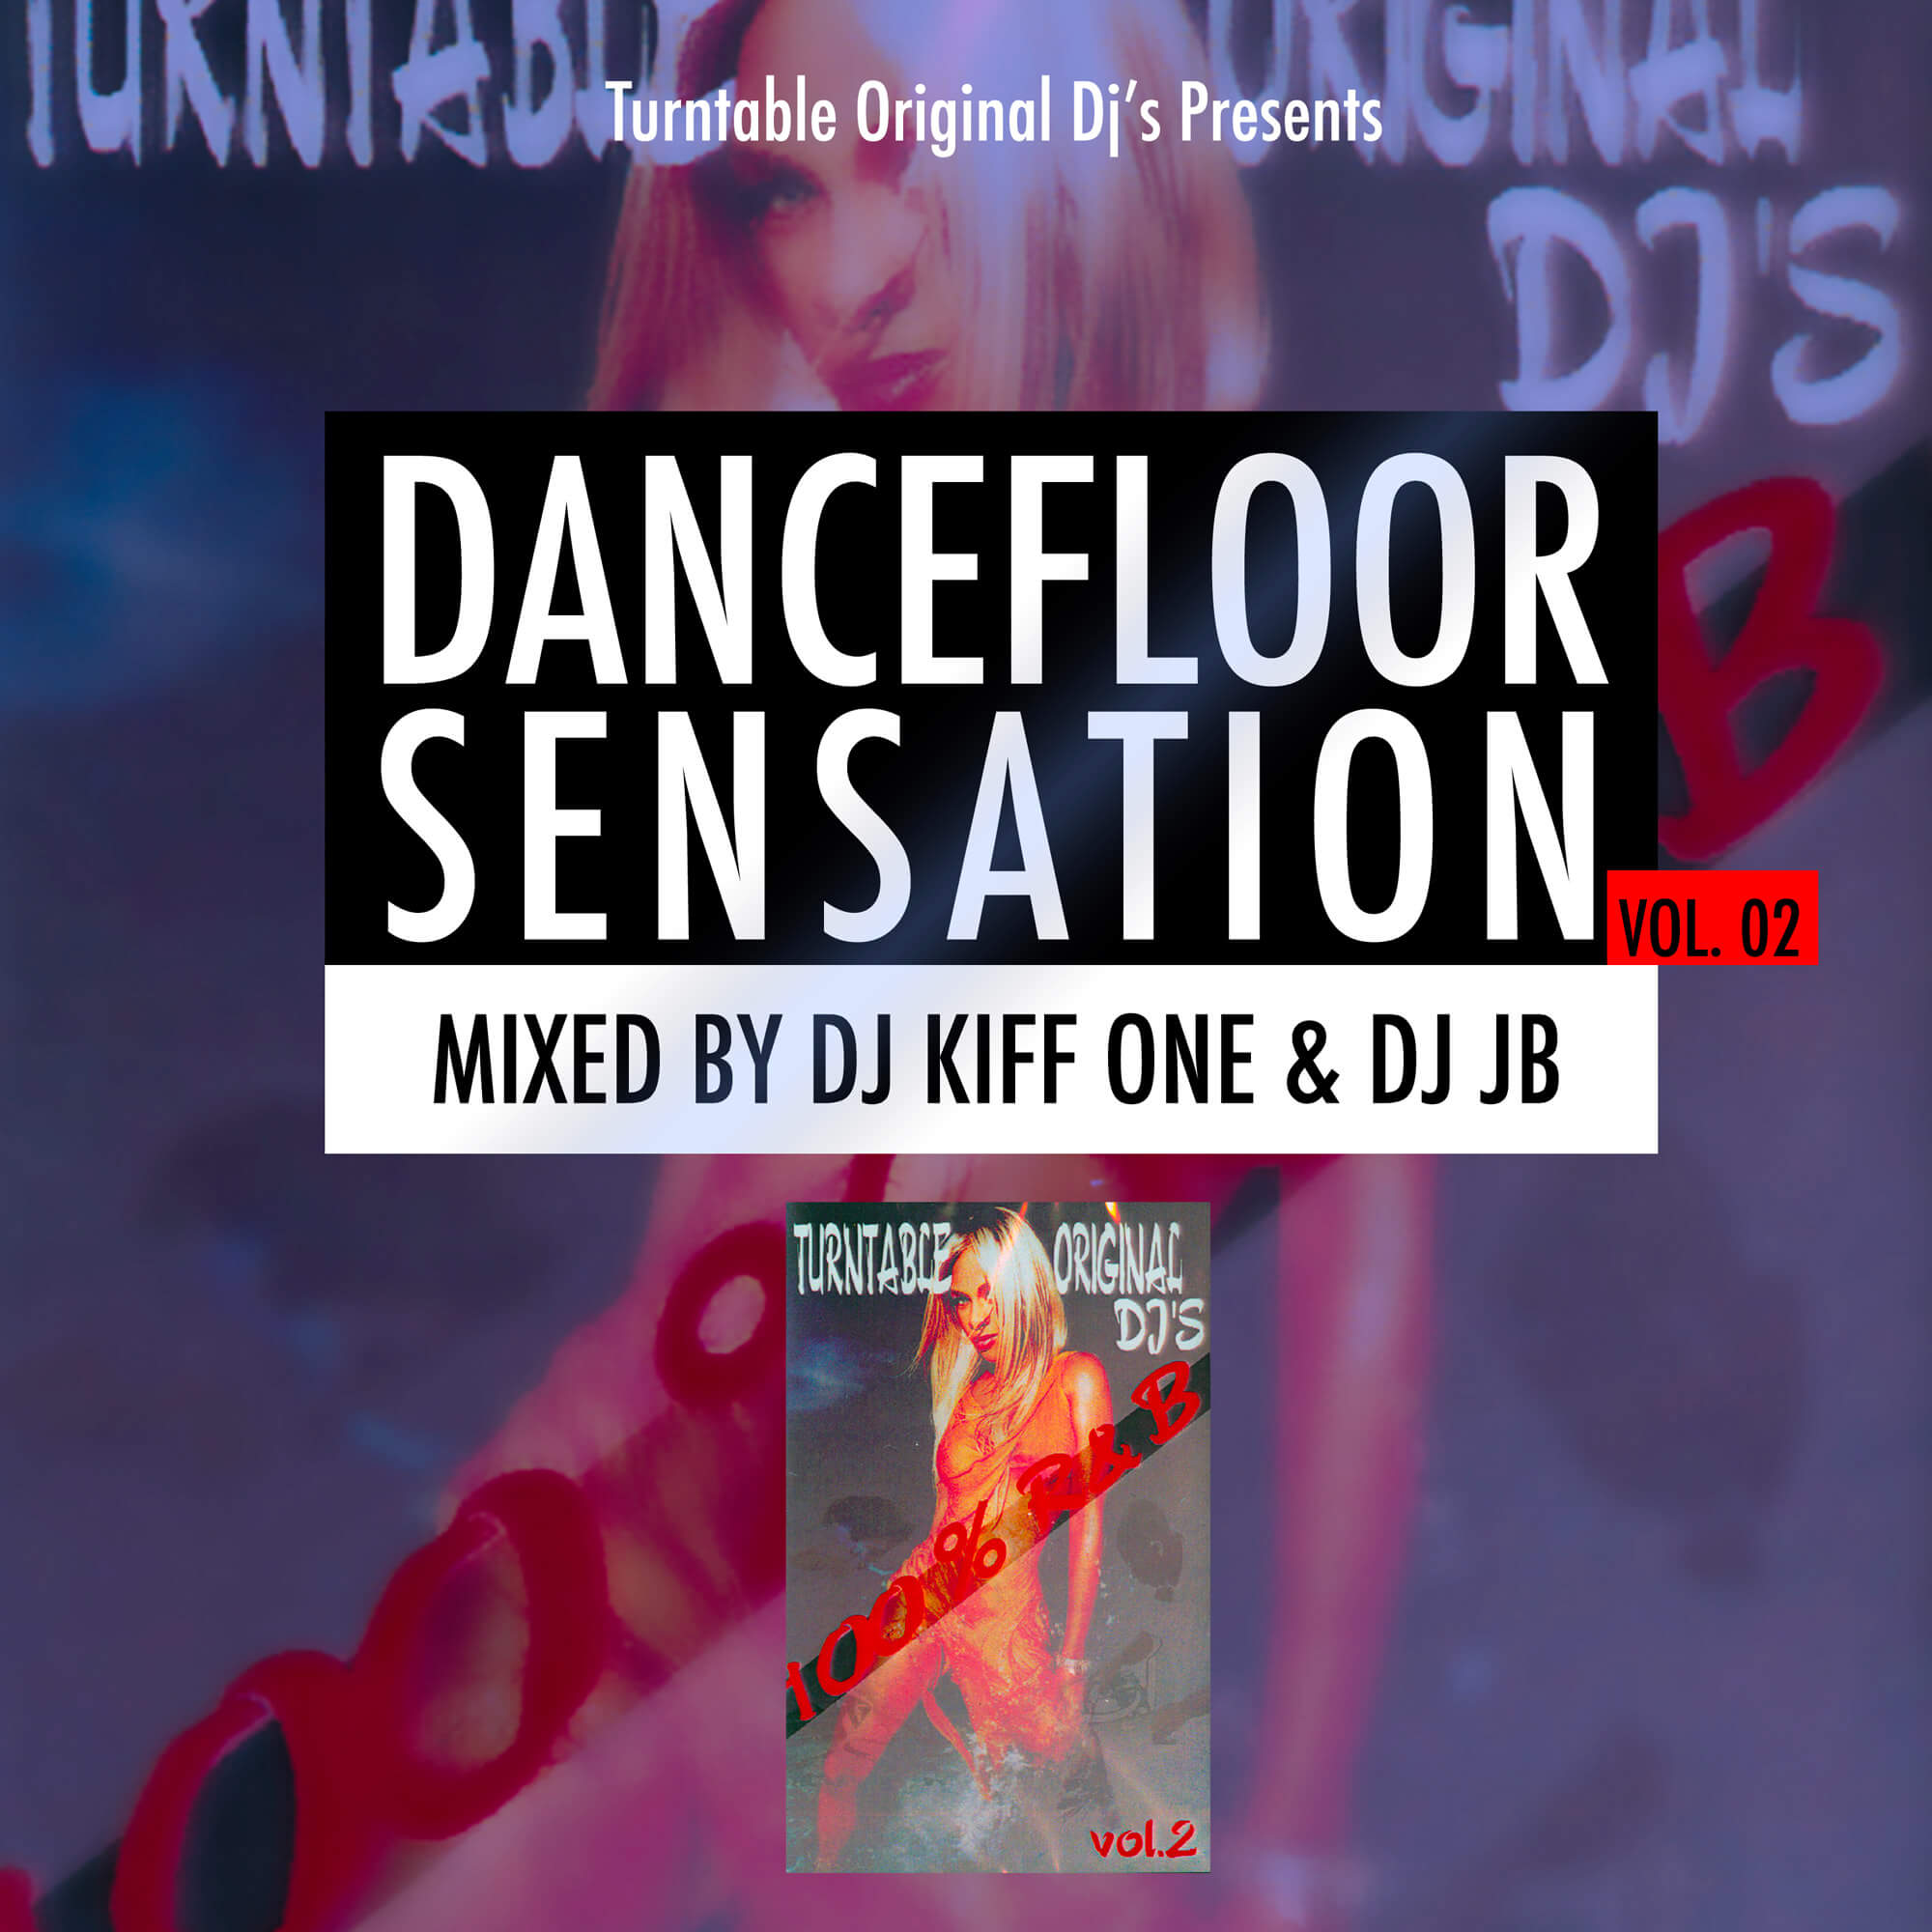 Dancefloor Sensation vol. 02